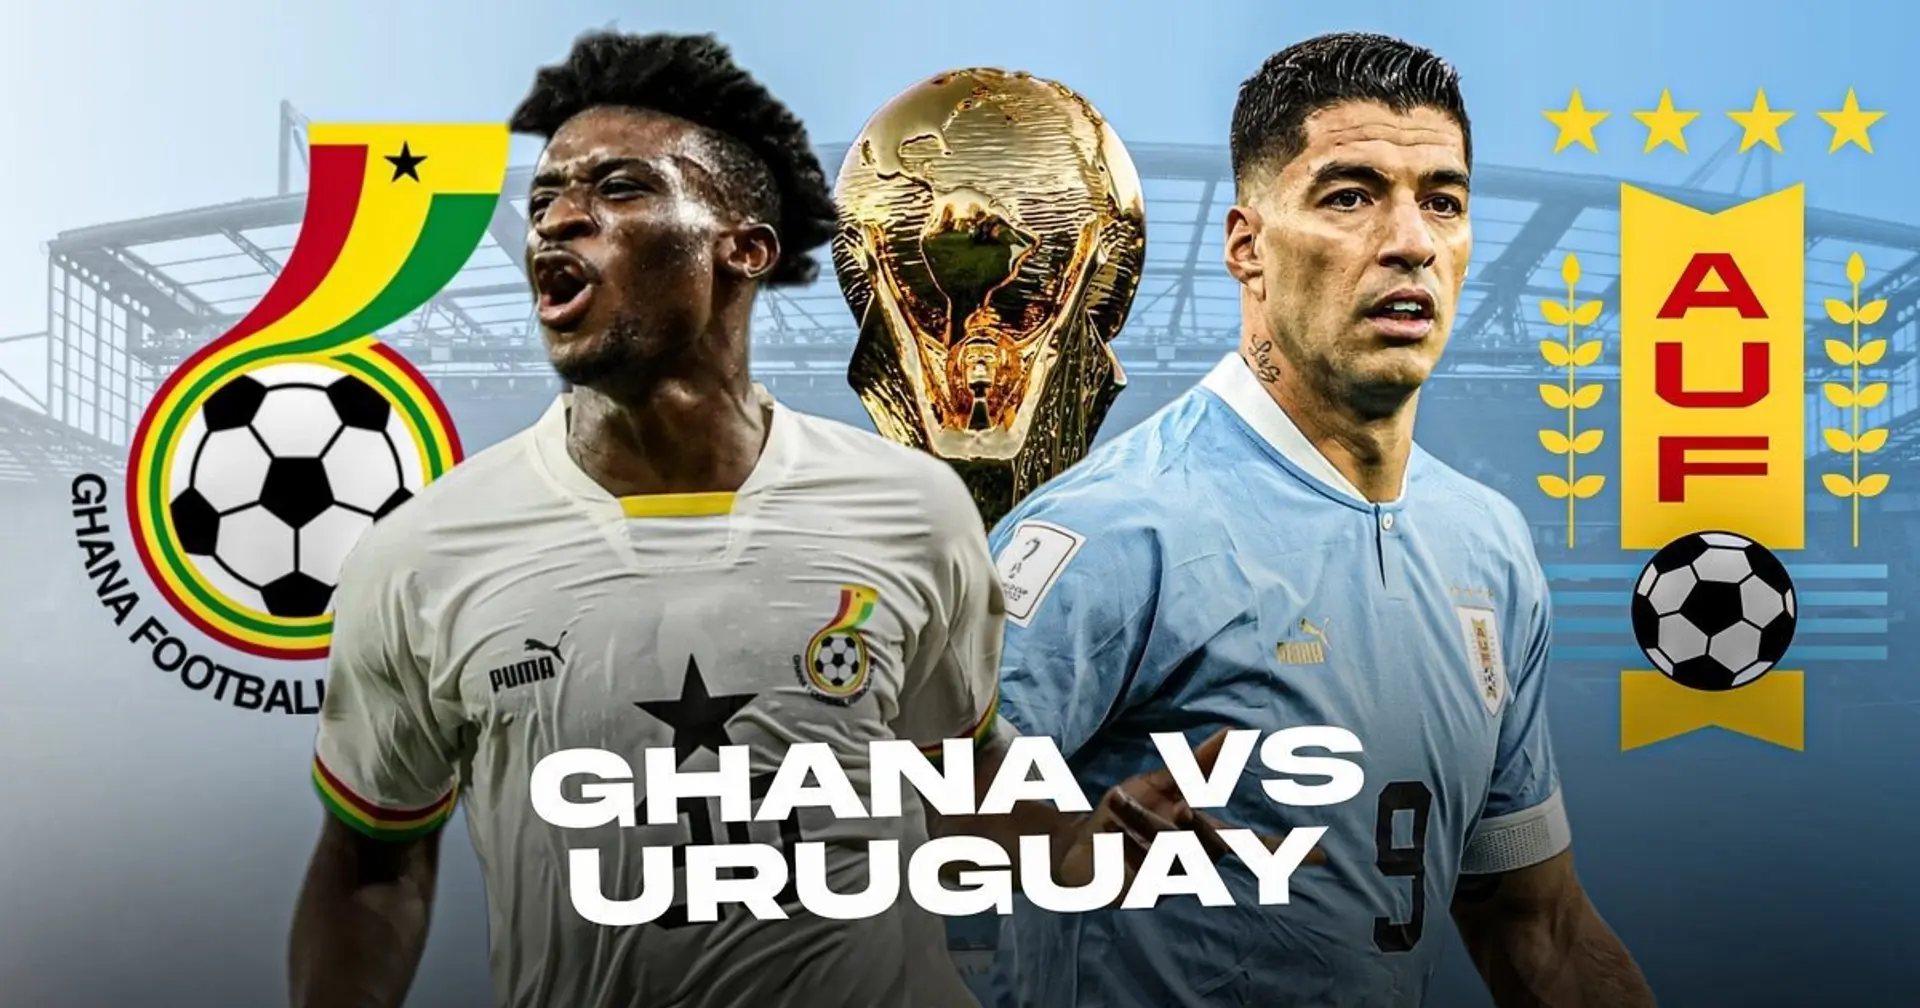 Ghana vs Uruguay: reveladas las alineaciones oficiales de los equipos para el choque de la Copa del Mundo